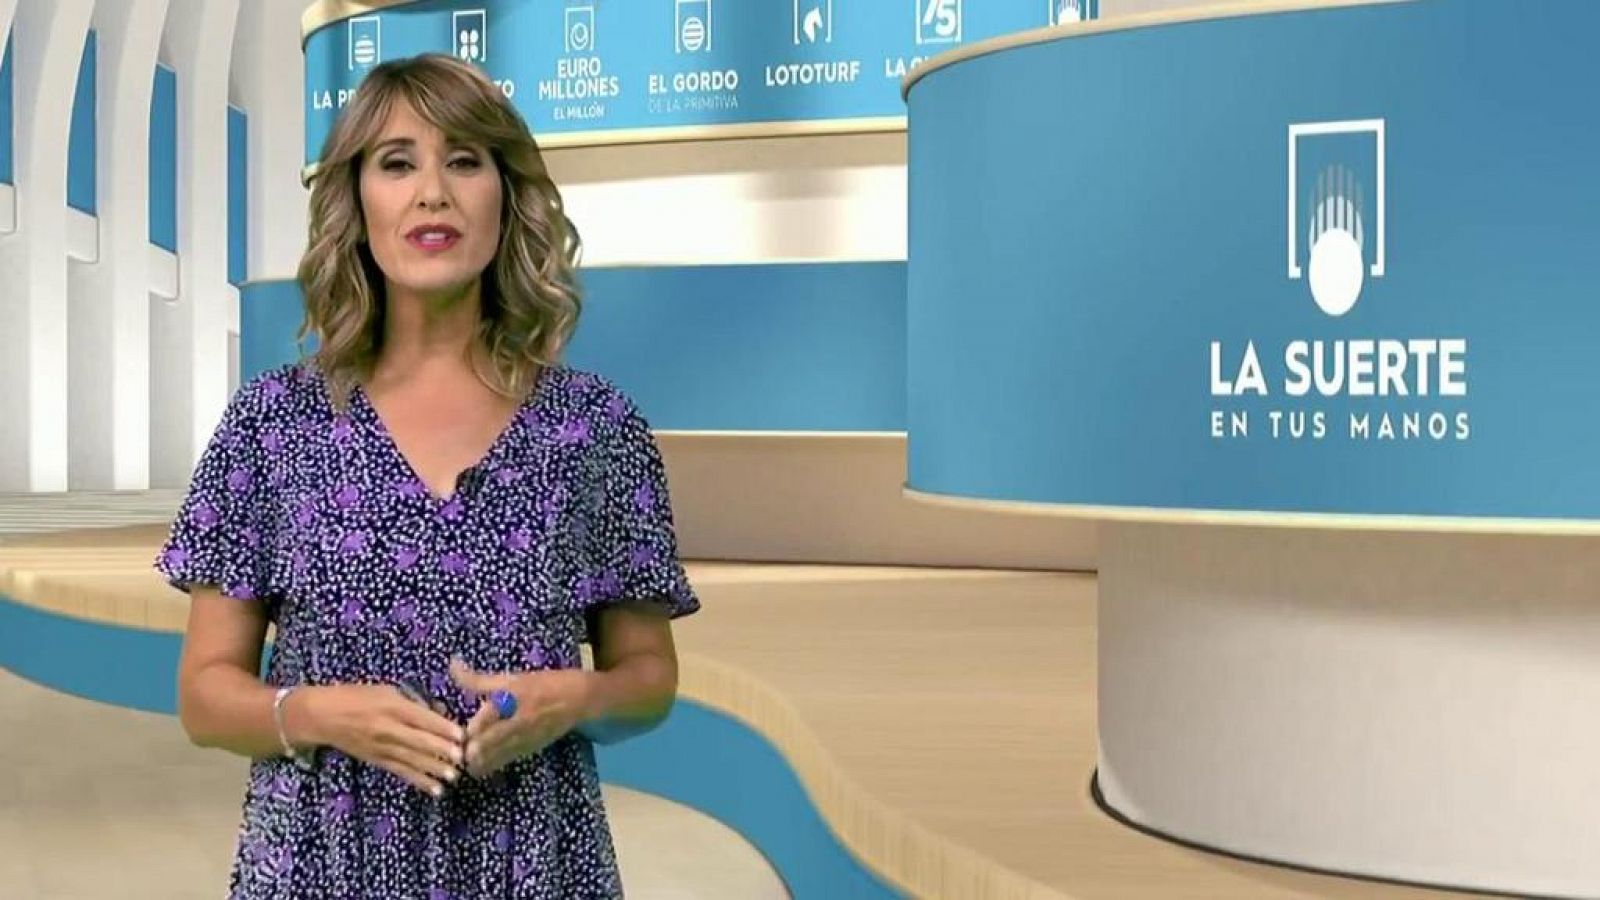 Información sobre Loterías "La suerte en tus manos" de RTVE